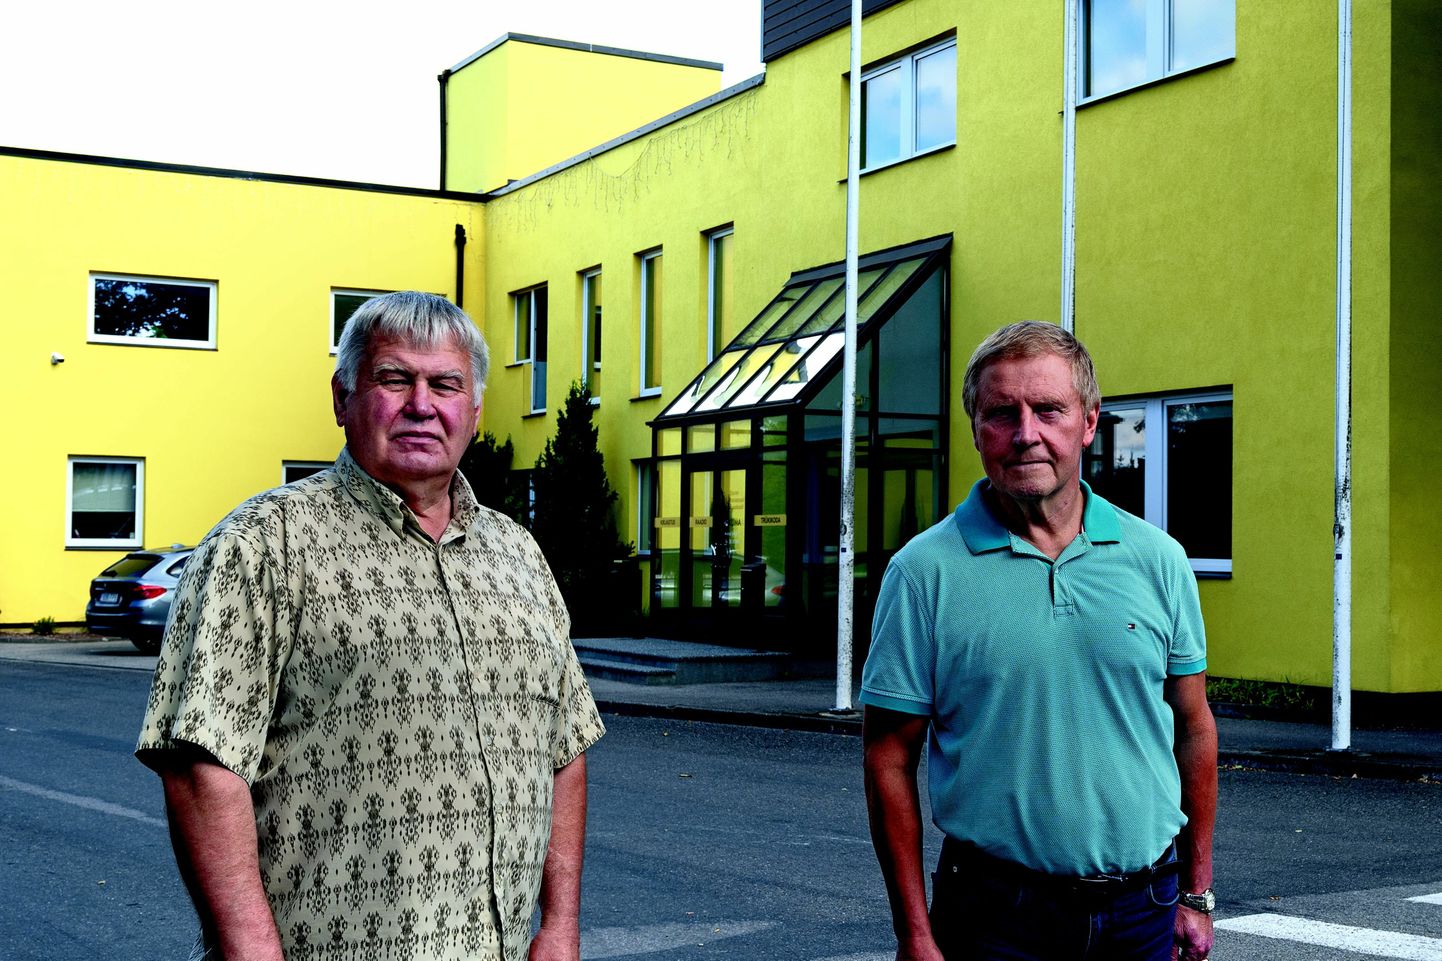 Kuma asutajad Märt Lõhmus (vasakul) ja Ervin Runnel kinnitavad, et 35. sünnipäev ei jää Kumale viimaseks, kuid ettevõtte juhtimise annavad nad tasapisi lastele üle.